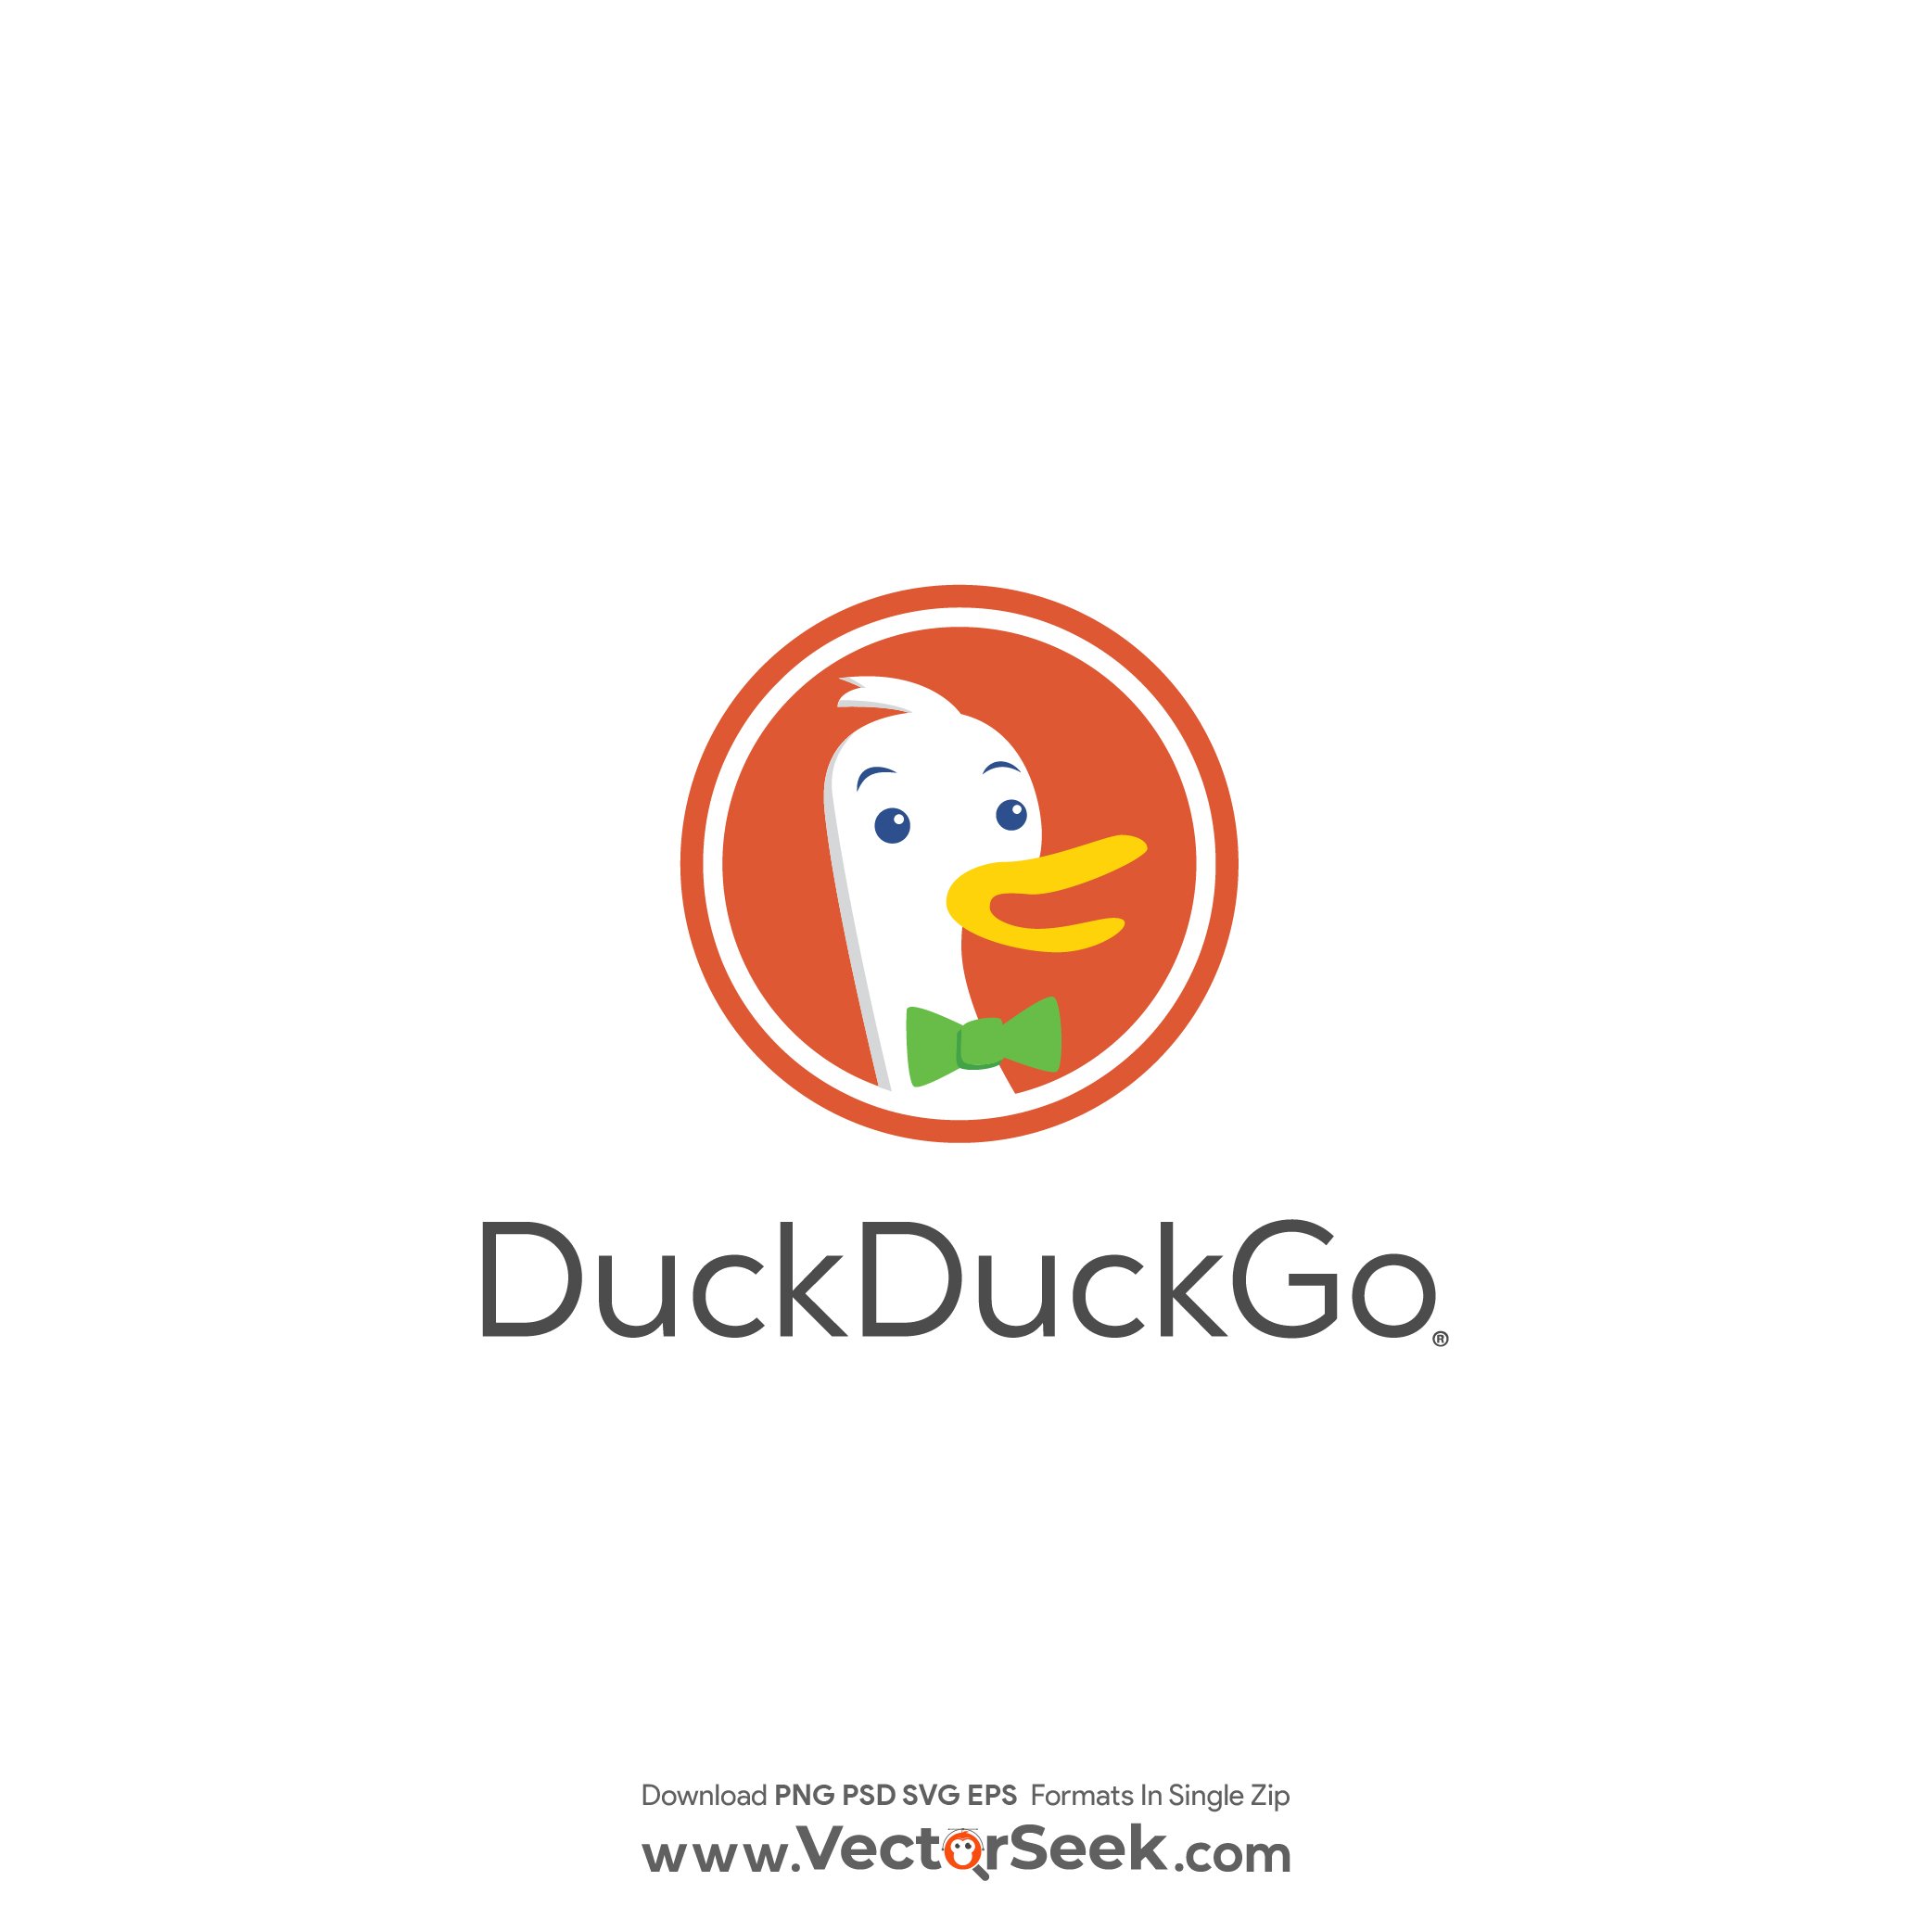 DuckDuckGo Logo Vector